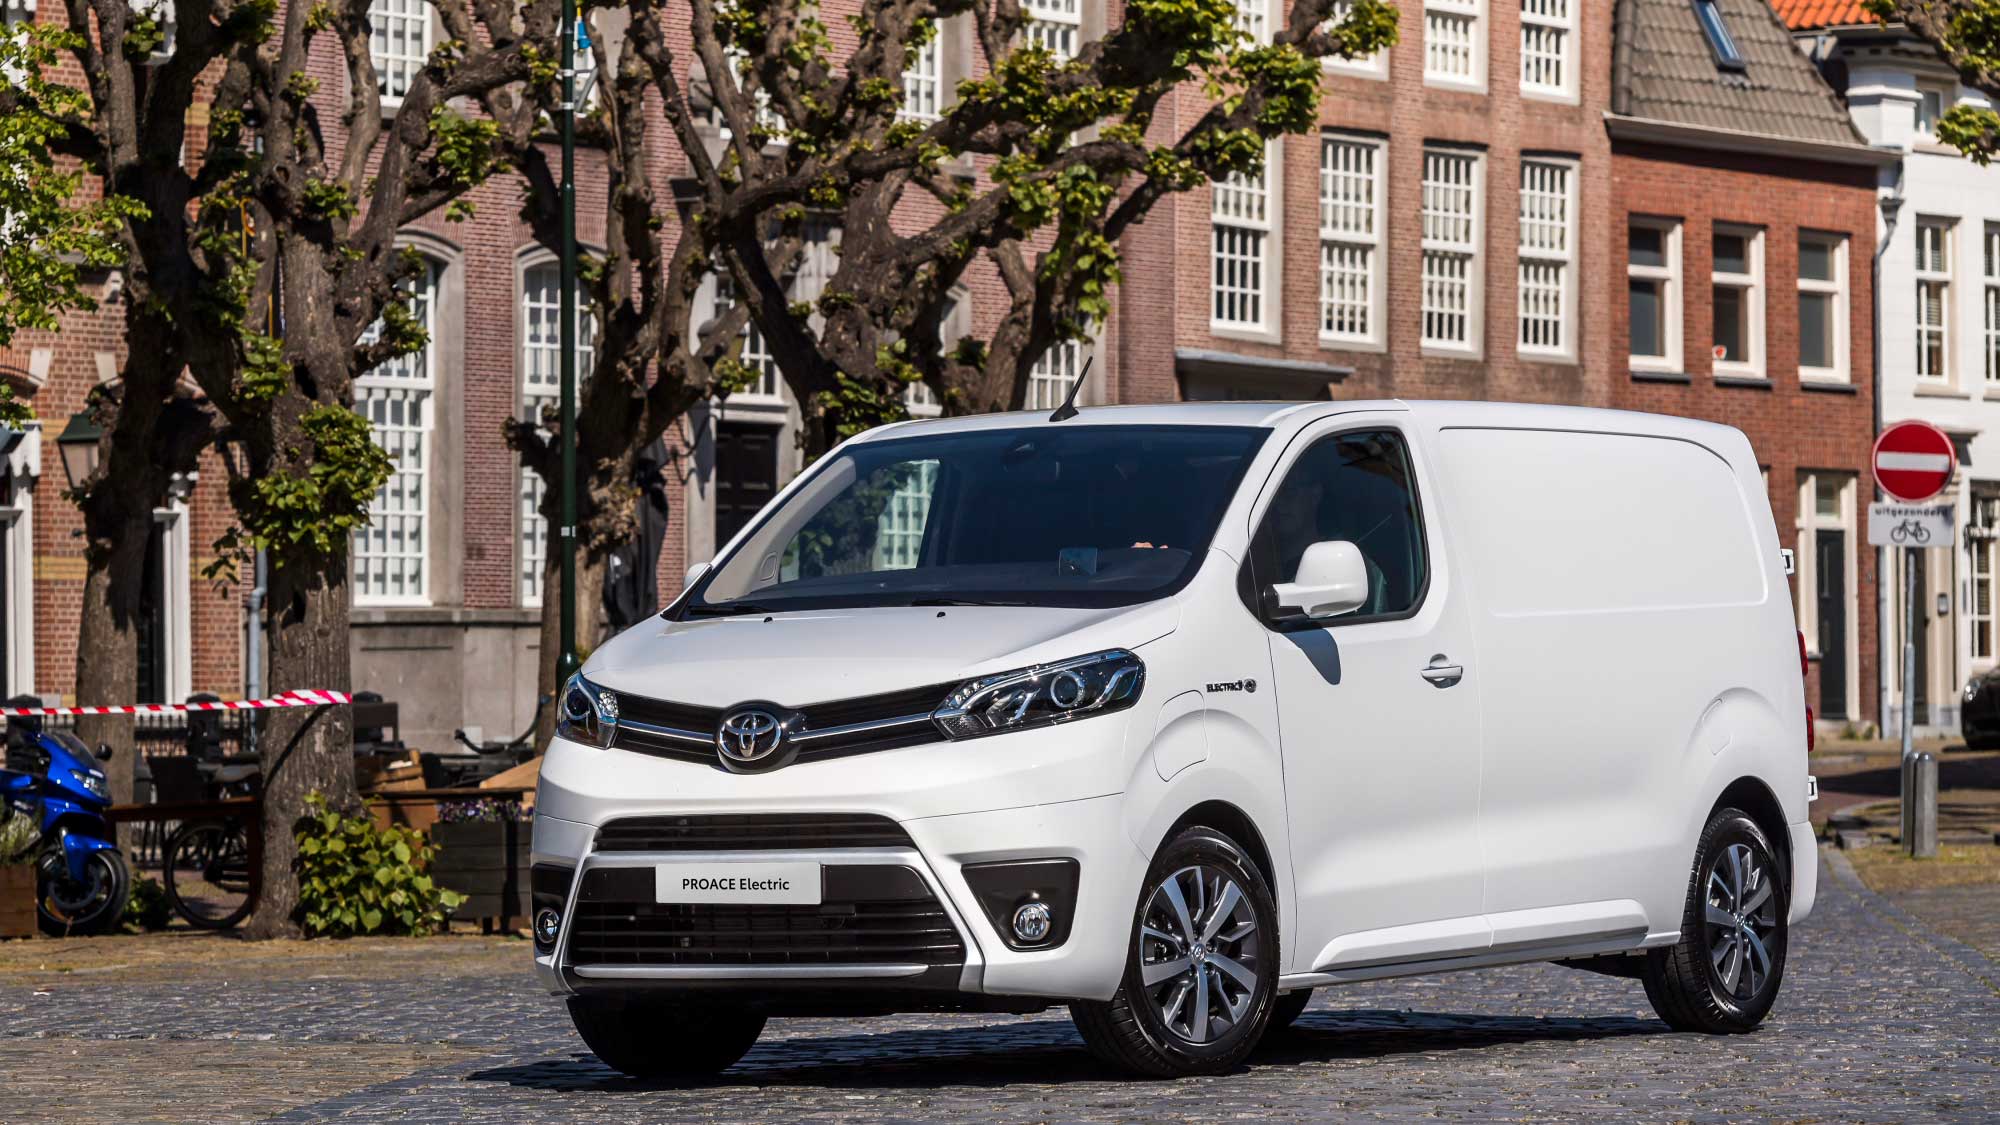 トヨタが欧州で商用電気自動車 プロエース エレクトリック の予約受付を開始 Evsmartブログ